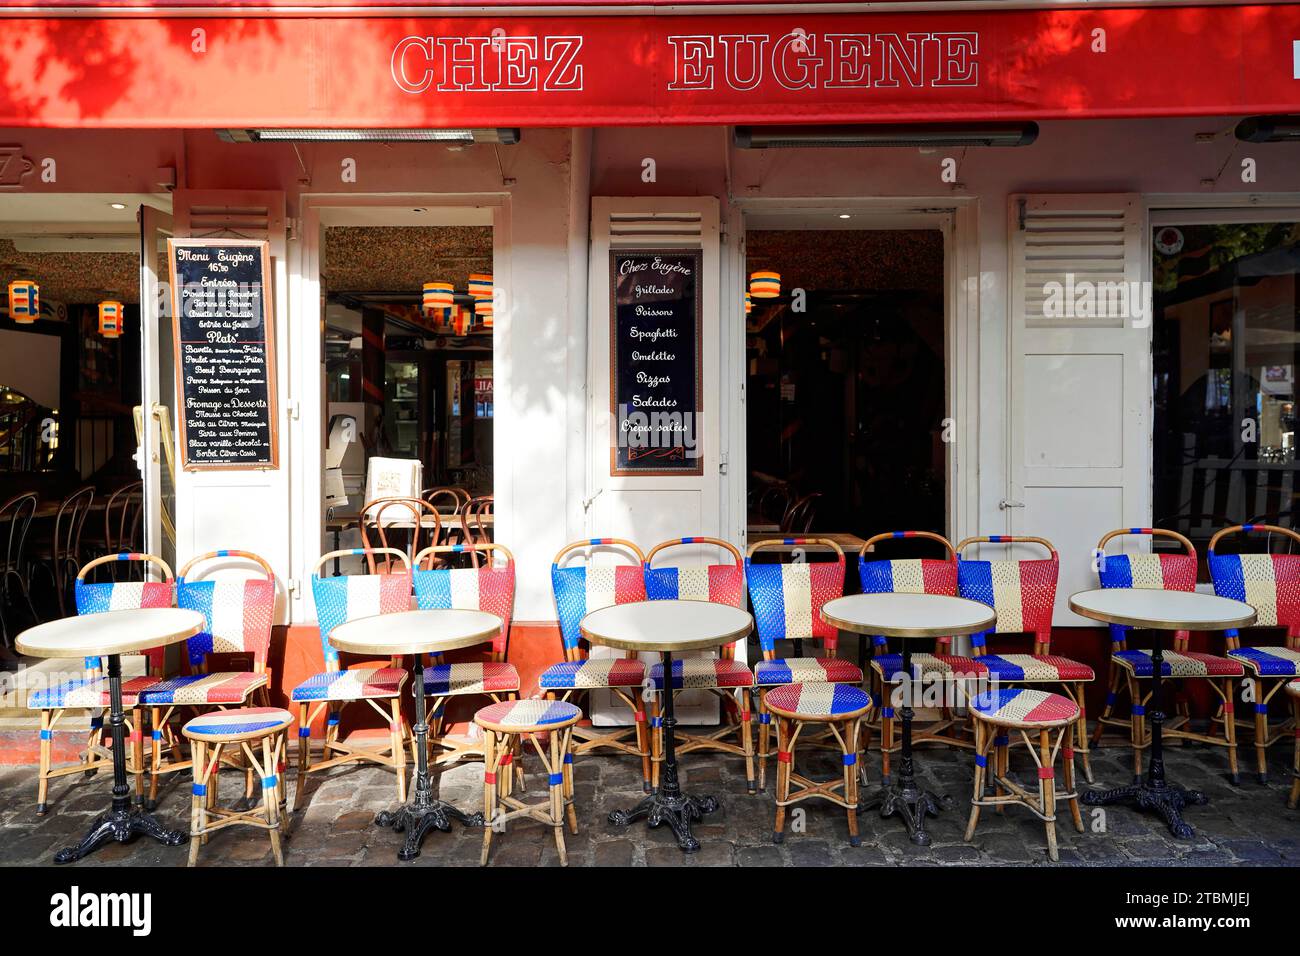 Café restaurant, Montmartre, Paris, France Banque D'Images